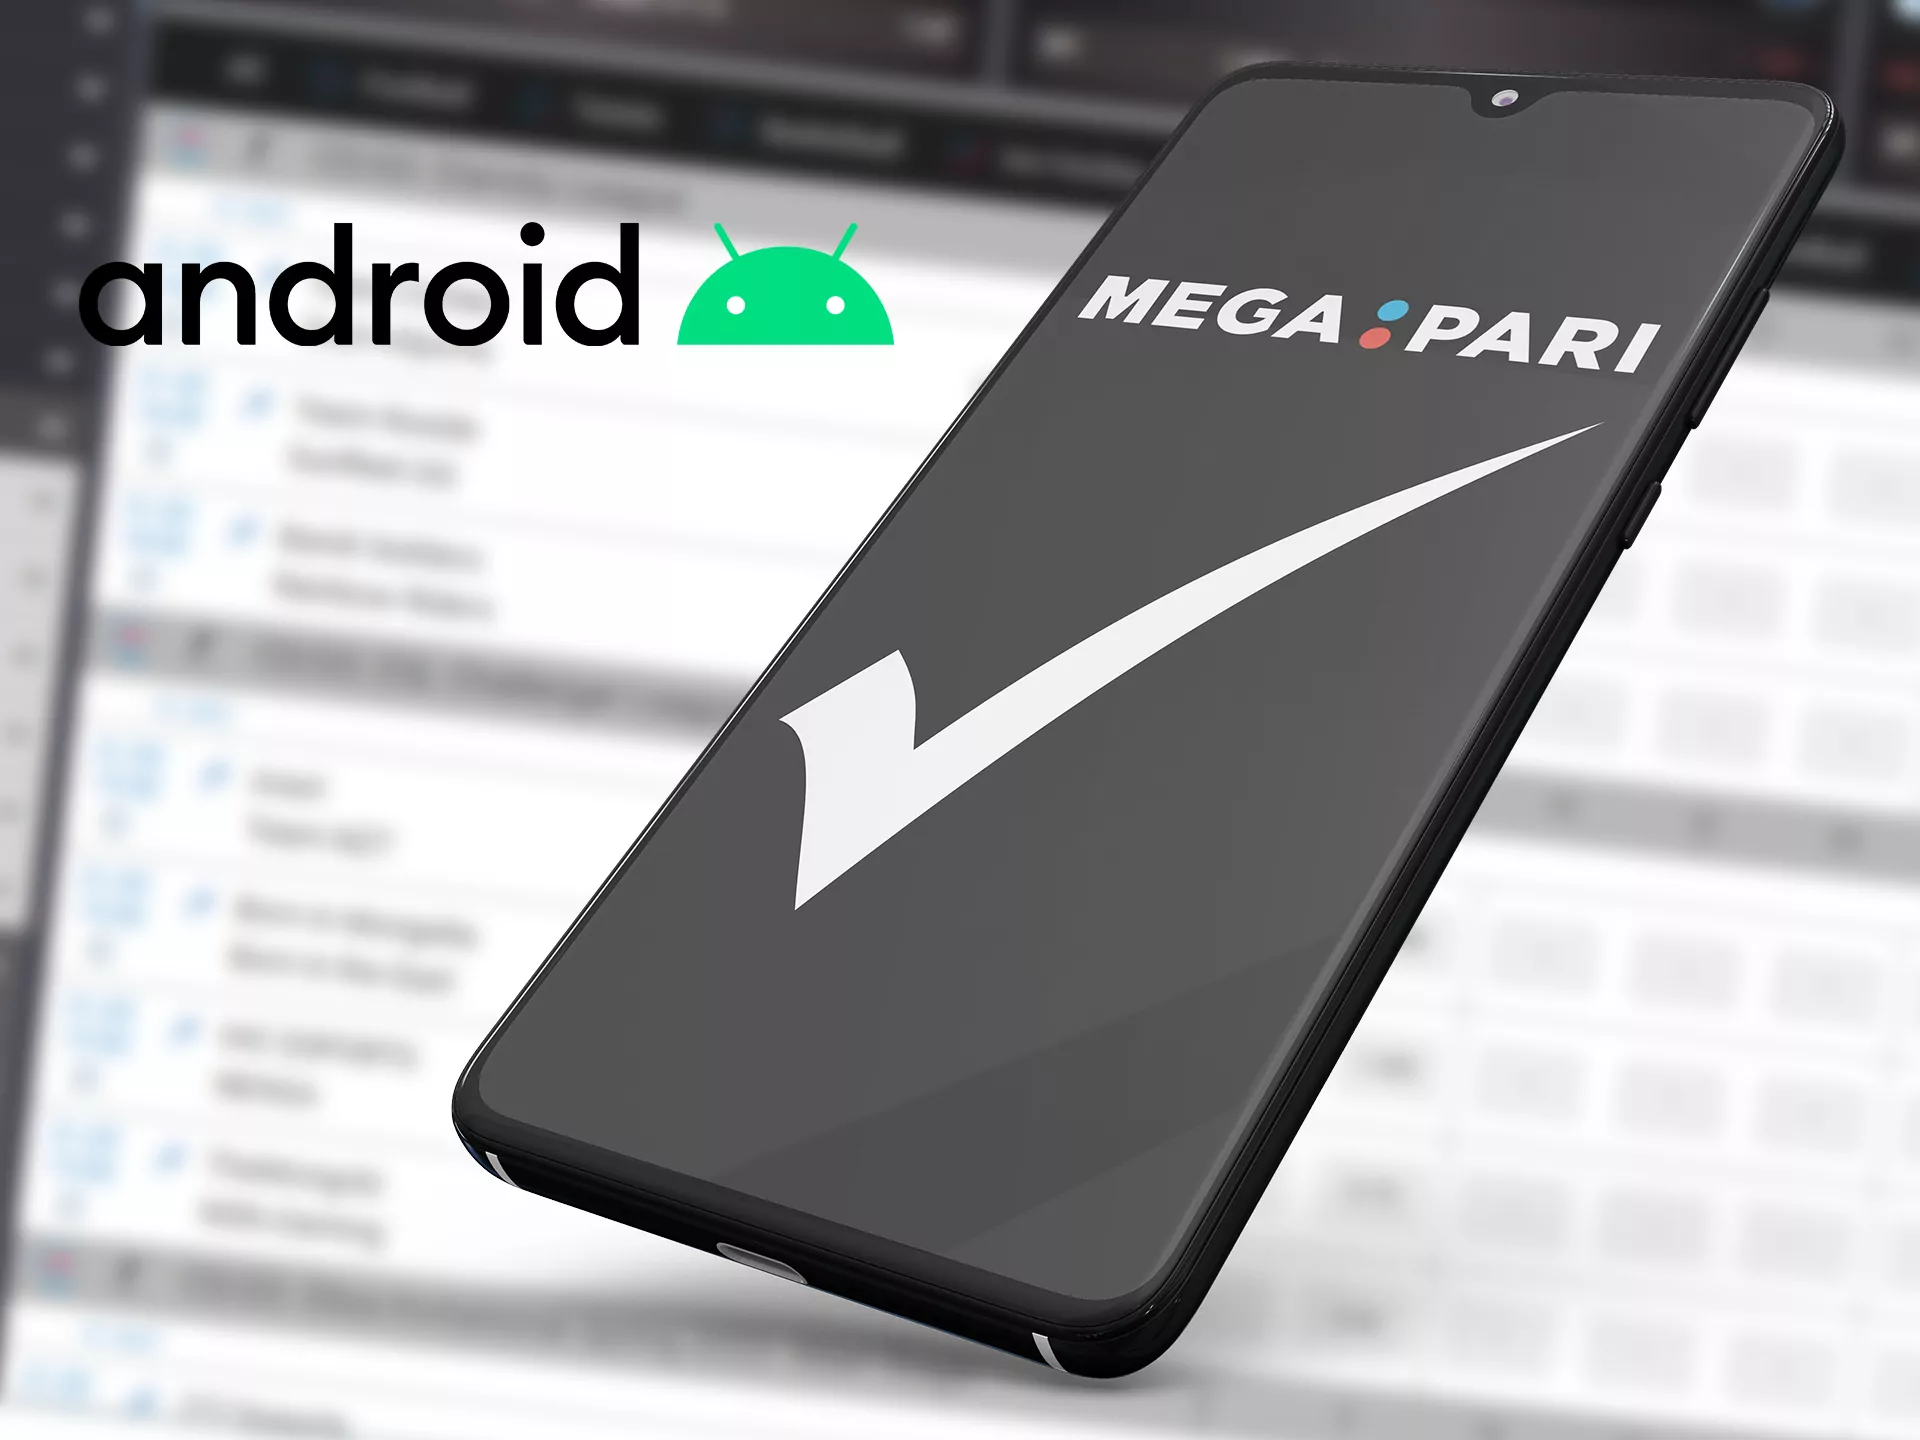 Install the Mega Pari app.